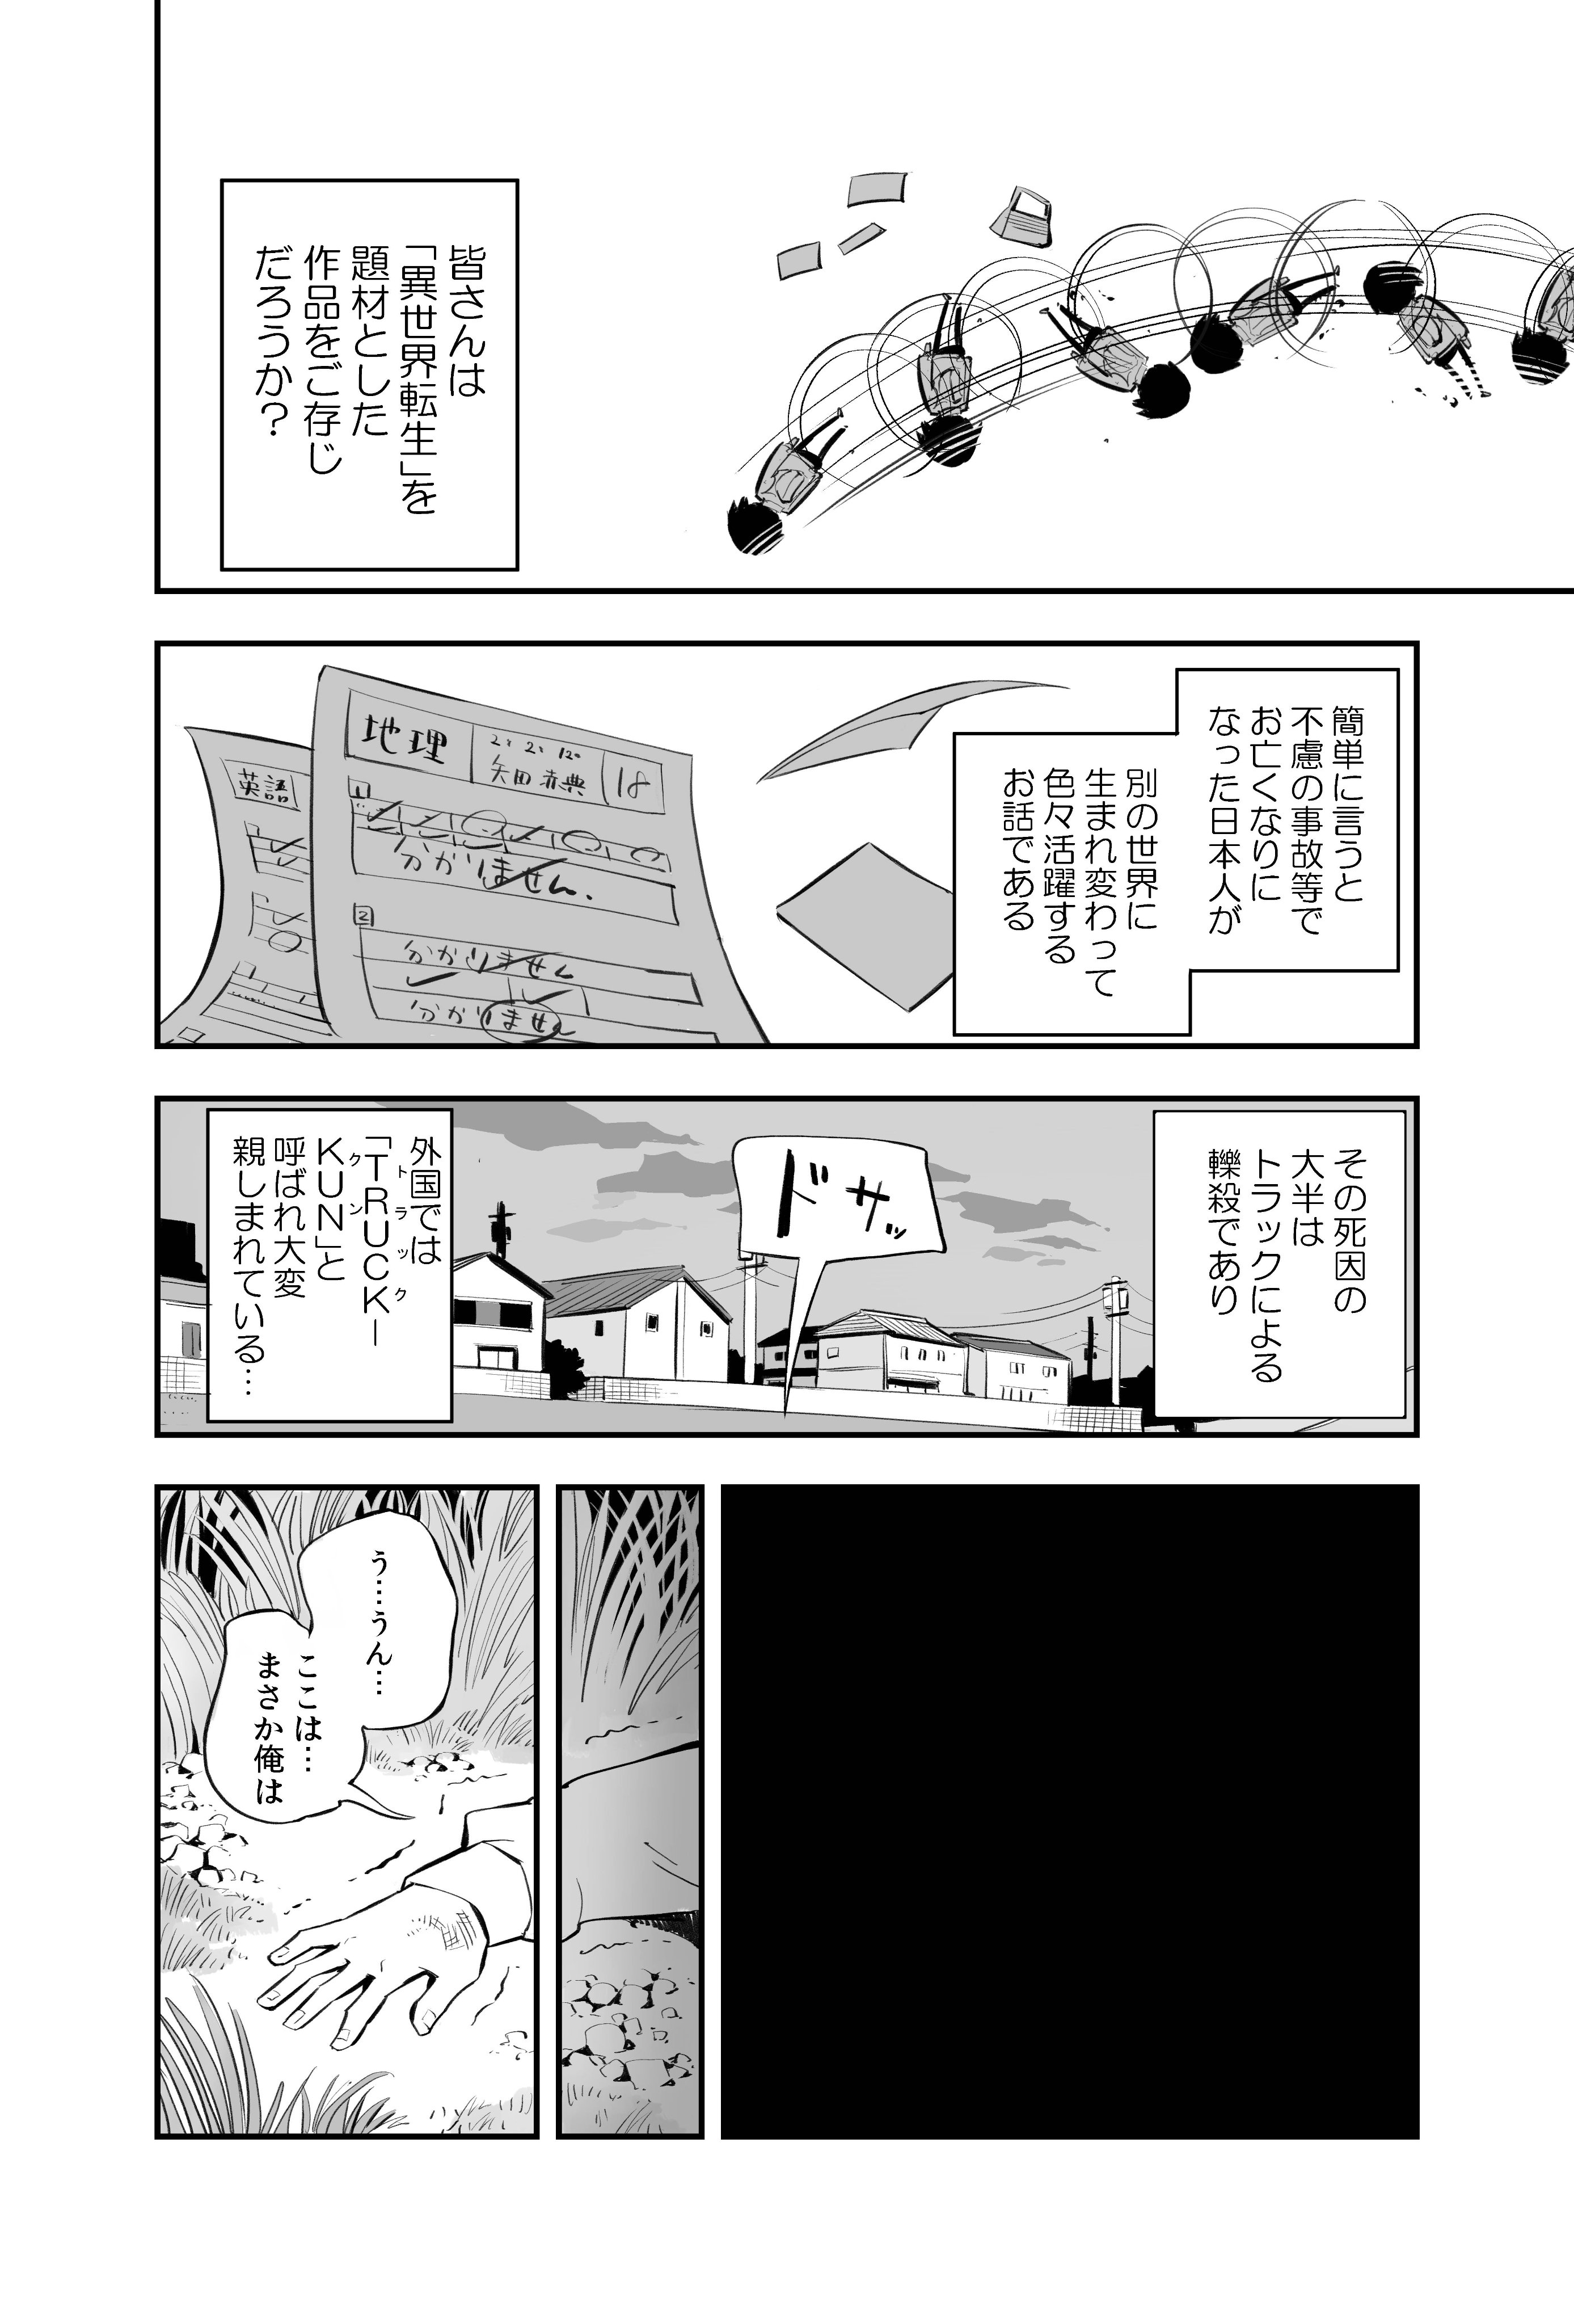  【漫画】『ギリギリ異世界転生しないお話』の画像